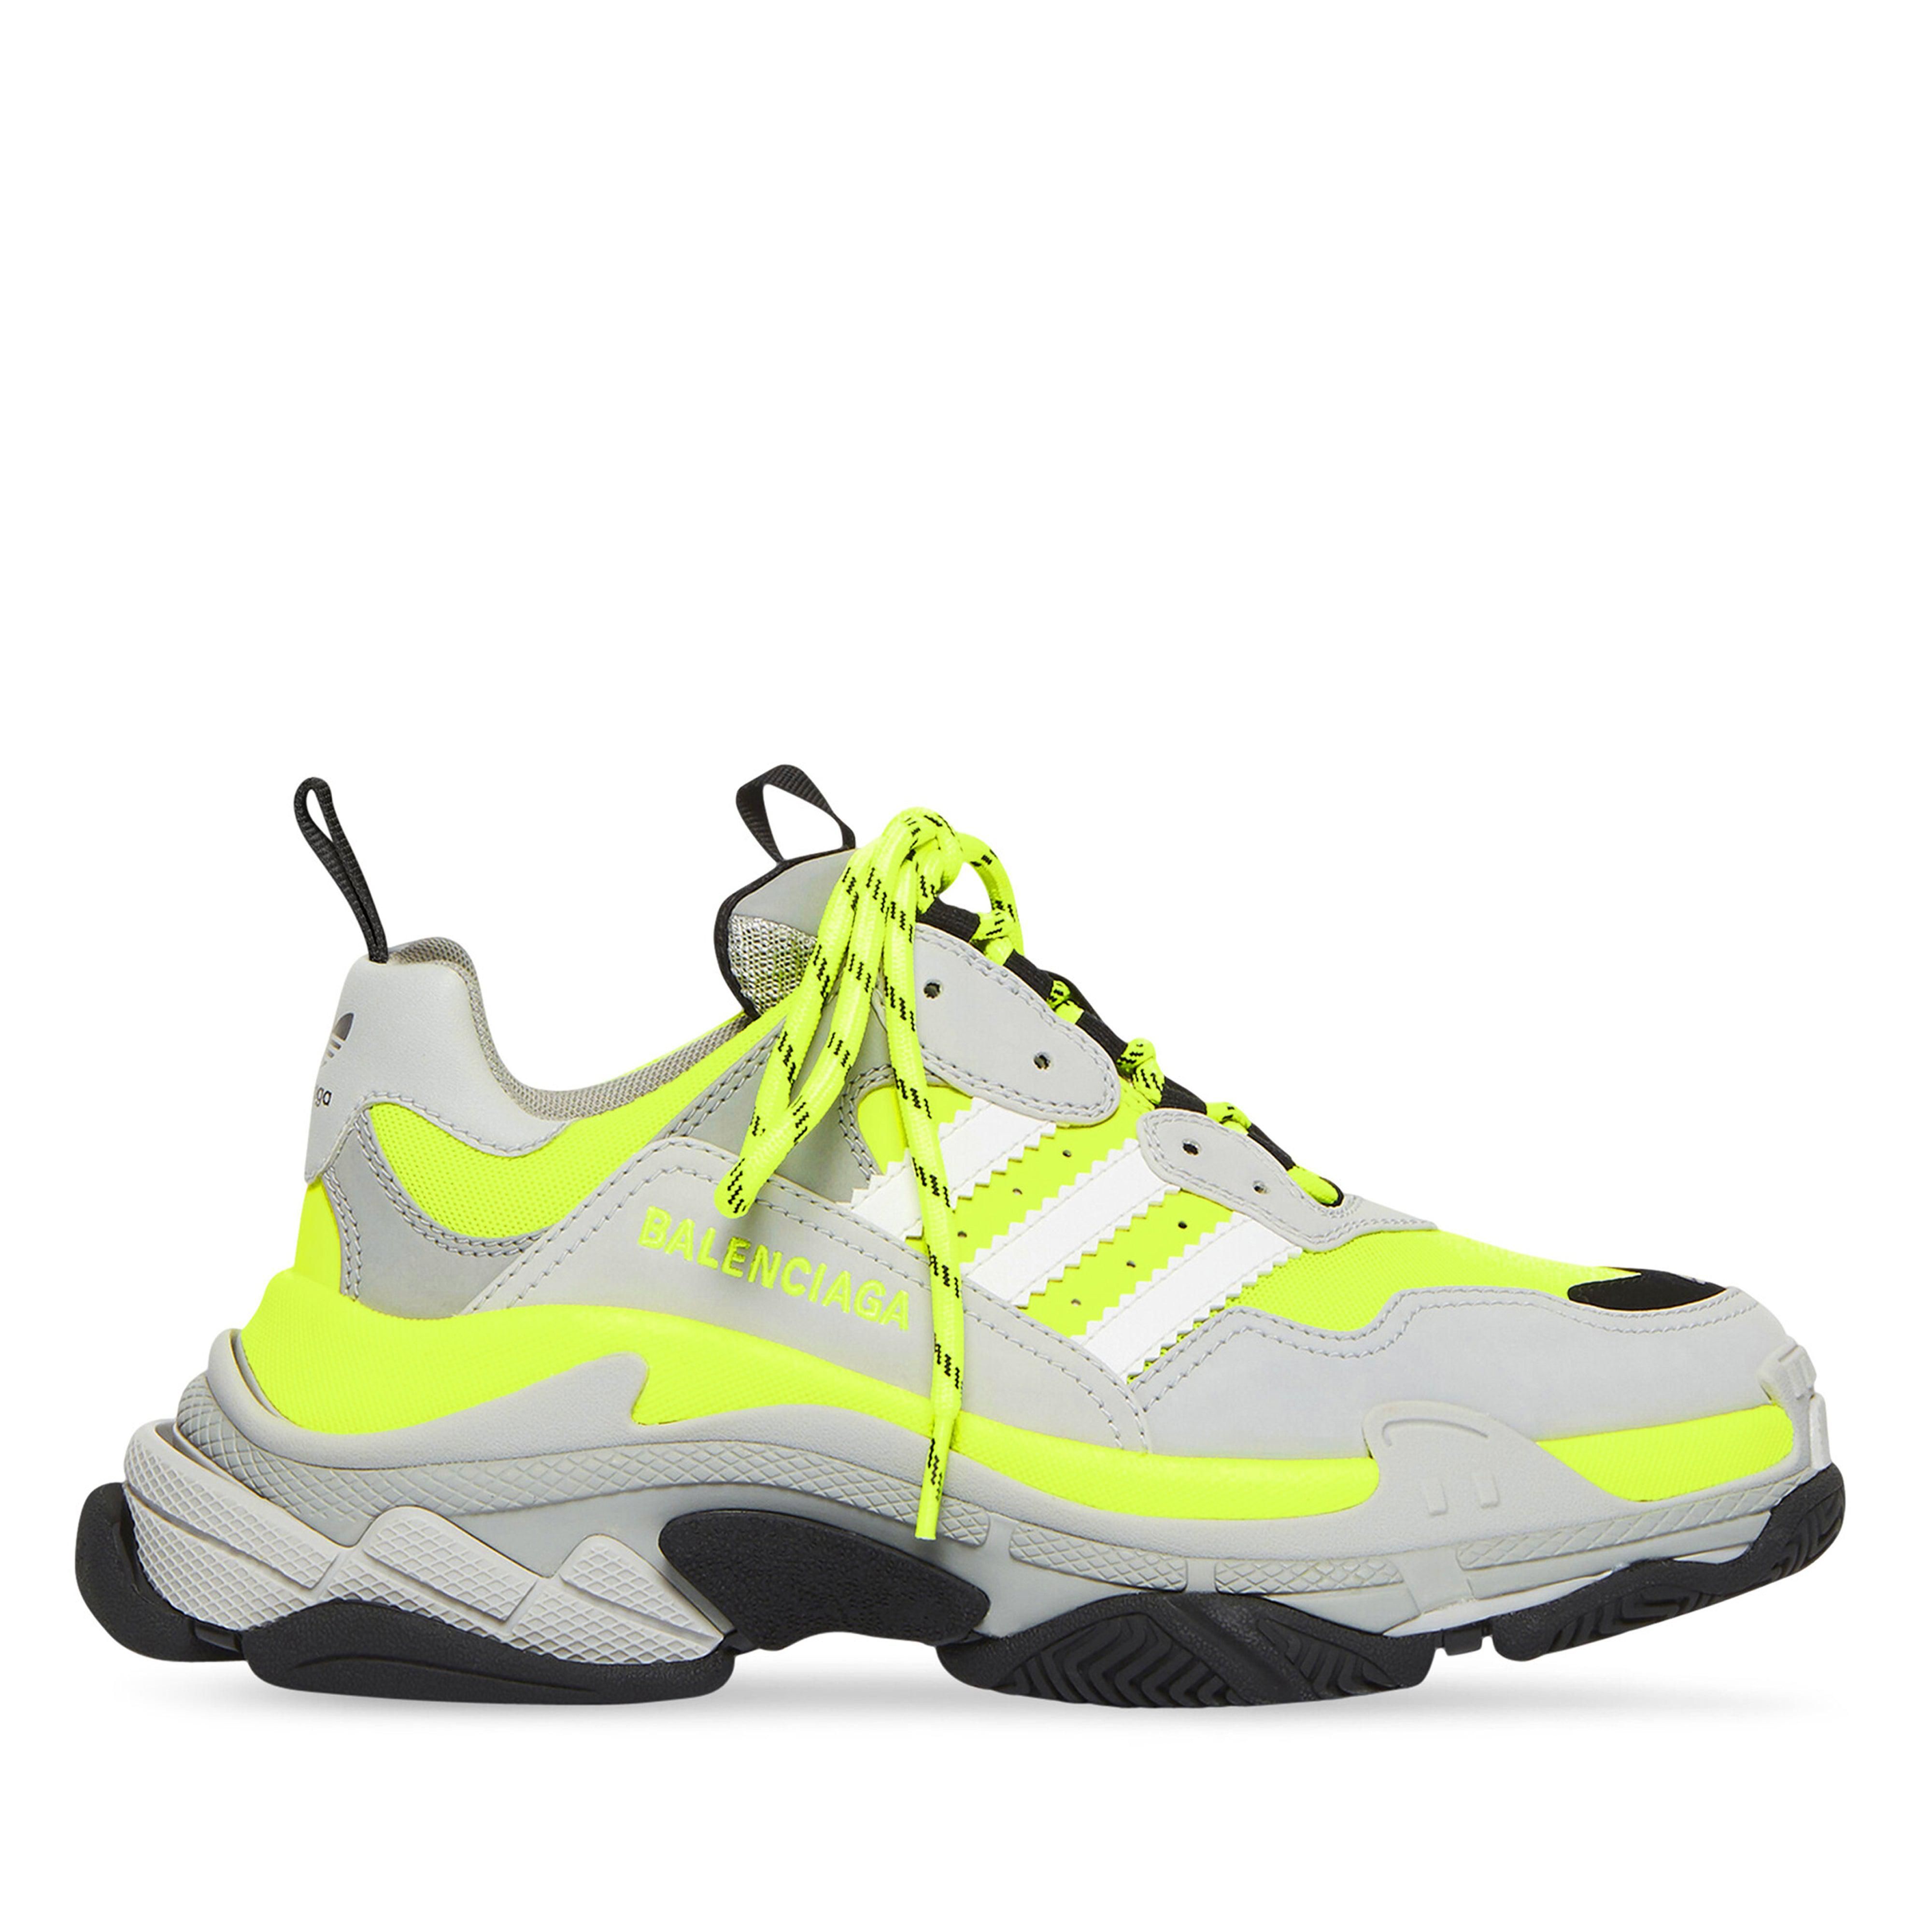 Balenciaga / Adidas Men's Triple S  Sneakers (Fluo Yellow) by BALENCIAGA